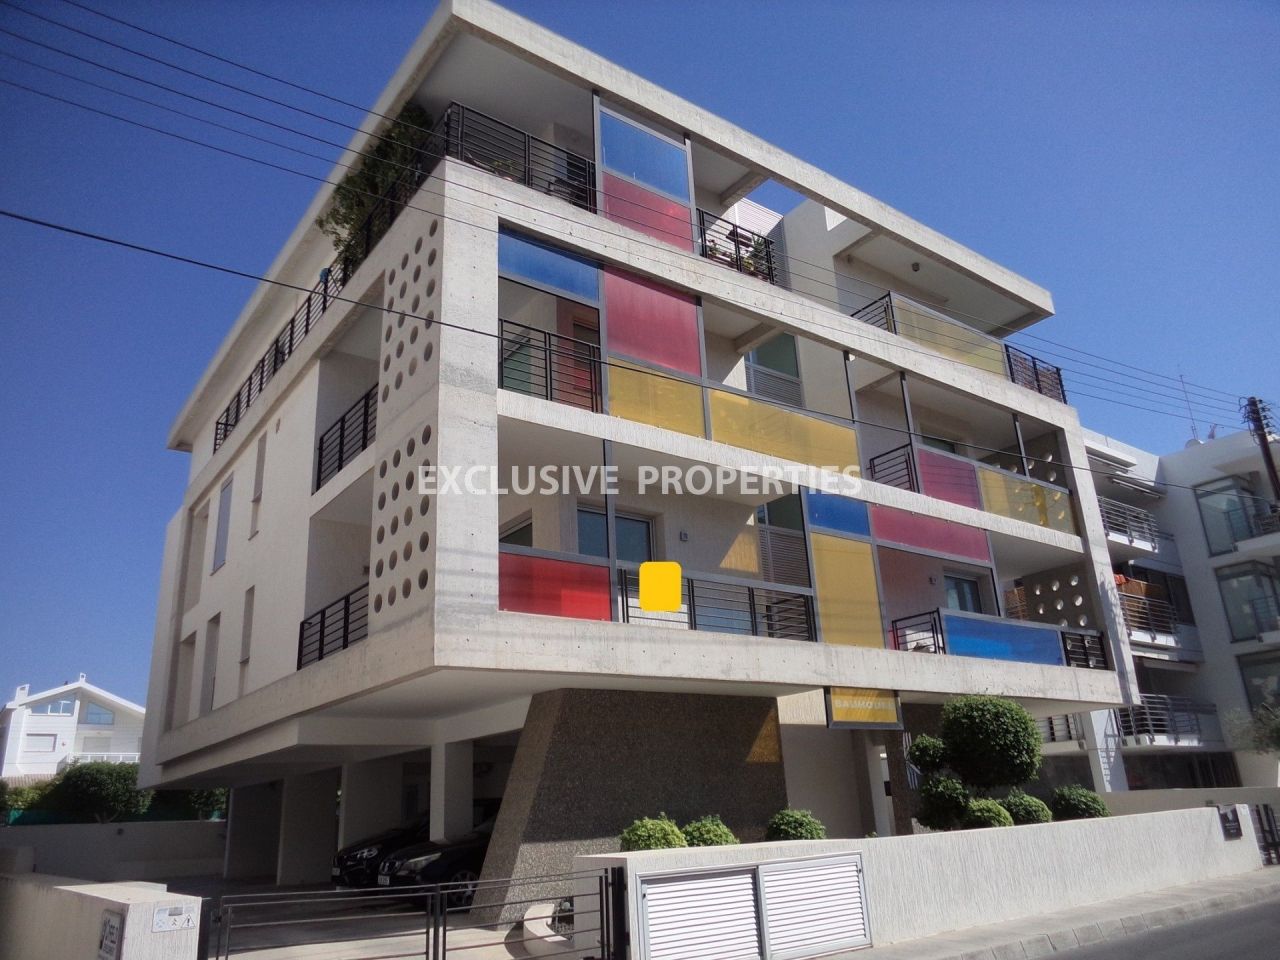 Апартаменты в Лимасоле, Кипр, 56 м2 - фото 1